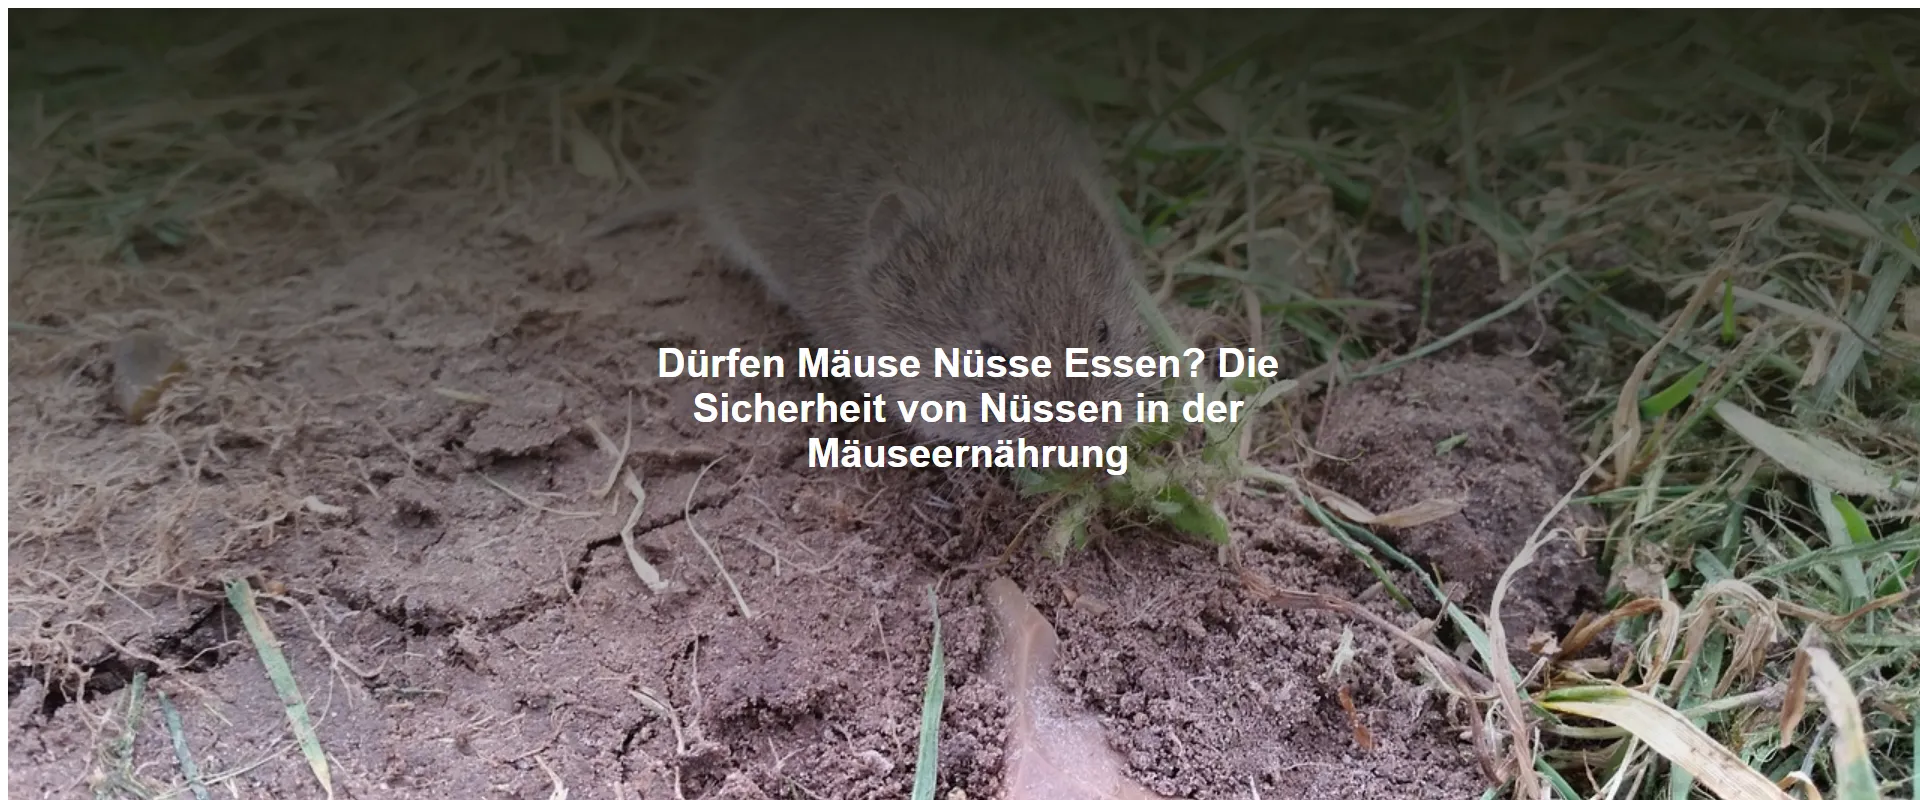 Dürfen Mäuse Nüsse Essen? Die Sicherheit von Nüssen in der Mäuseernährung